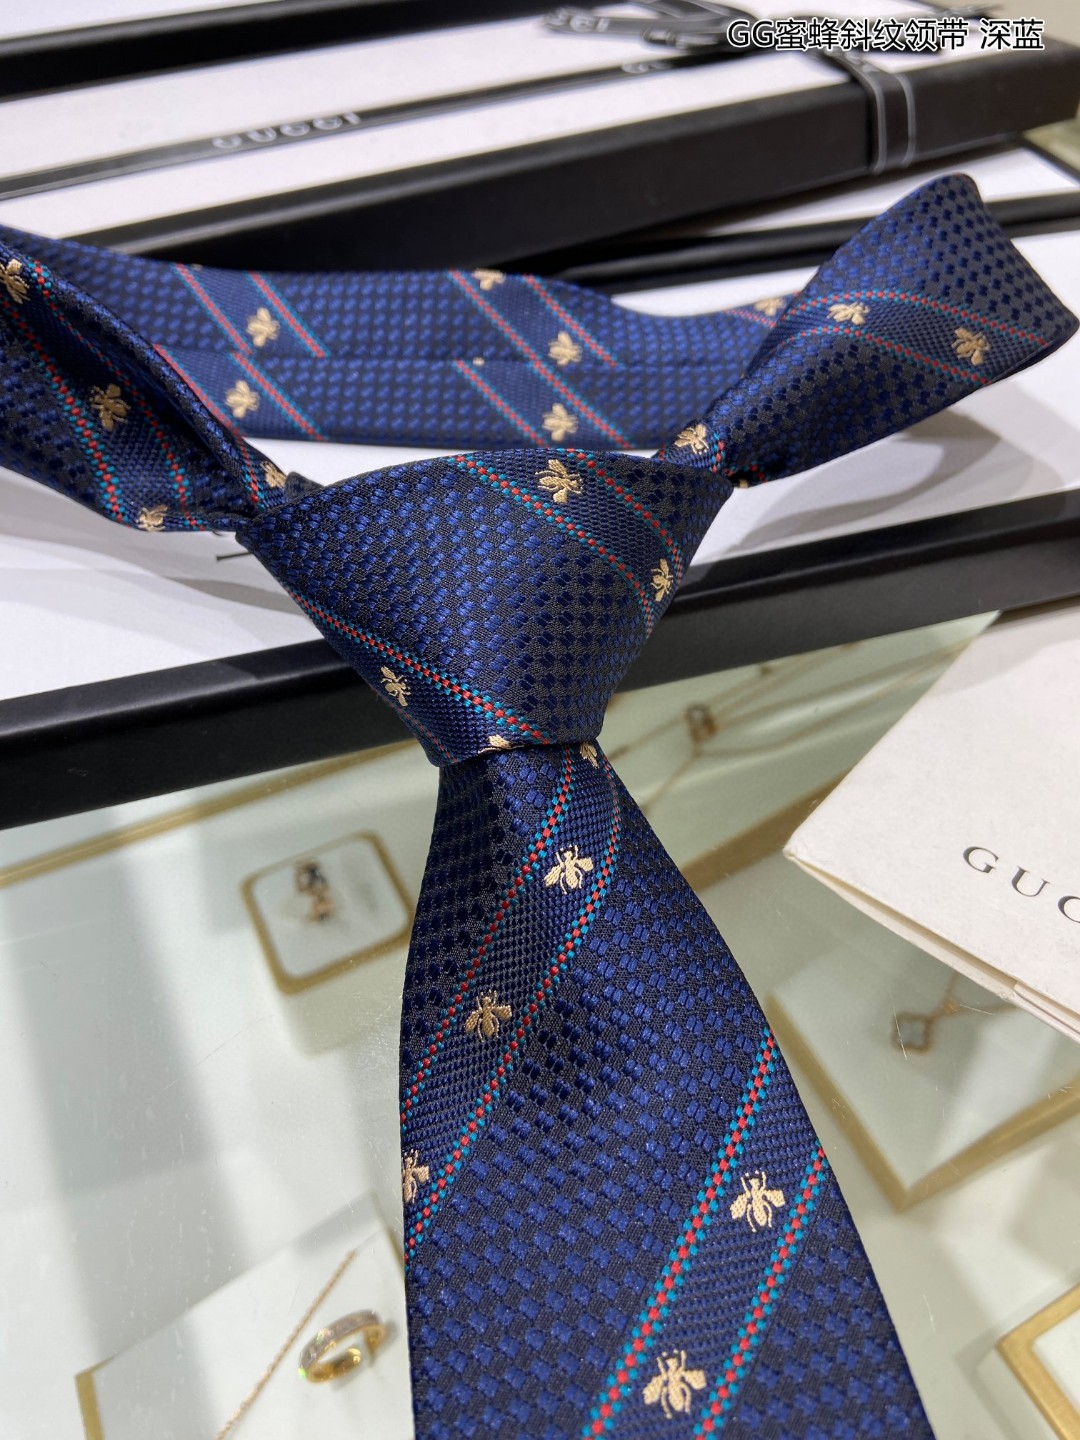 上新G家男士领带系列GG蜜蜂斜纹领带稀有展现精湛手工与时尚优雅的理想选择这款领带将标志性的主题动物小蜜蜂